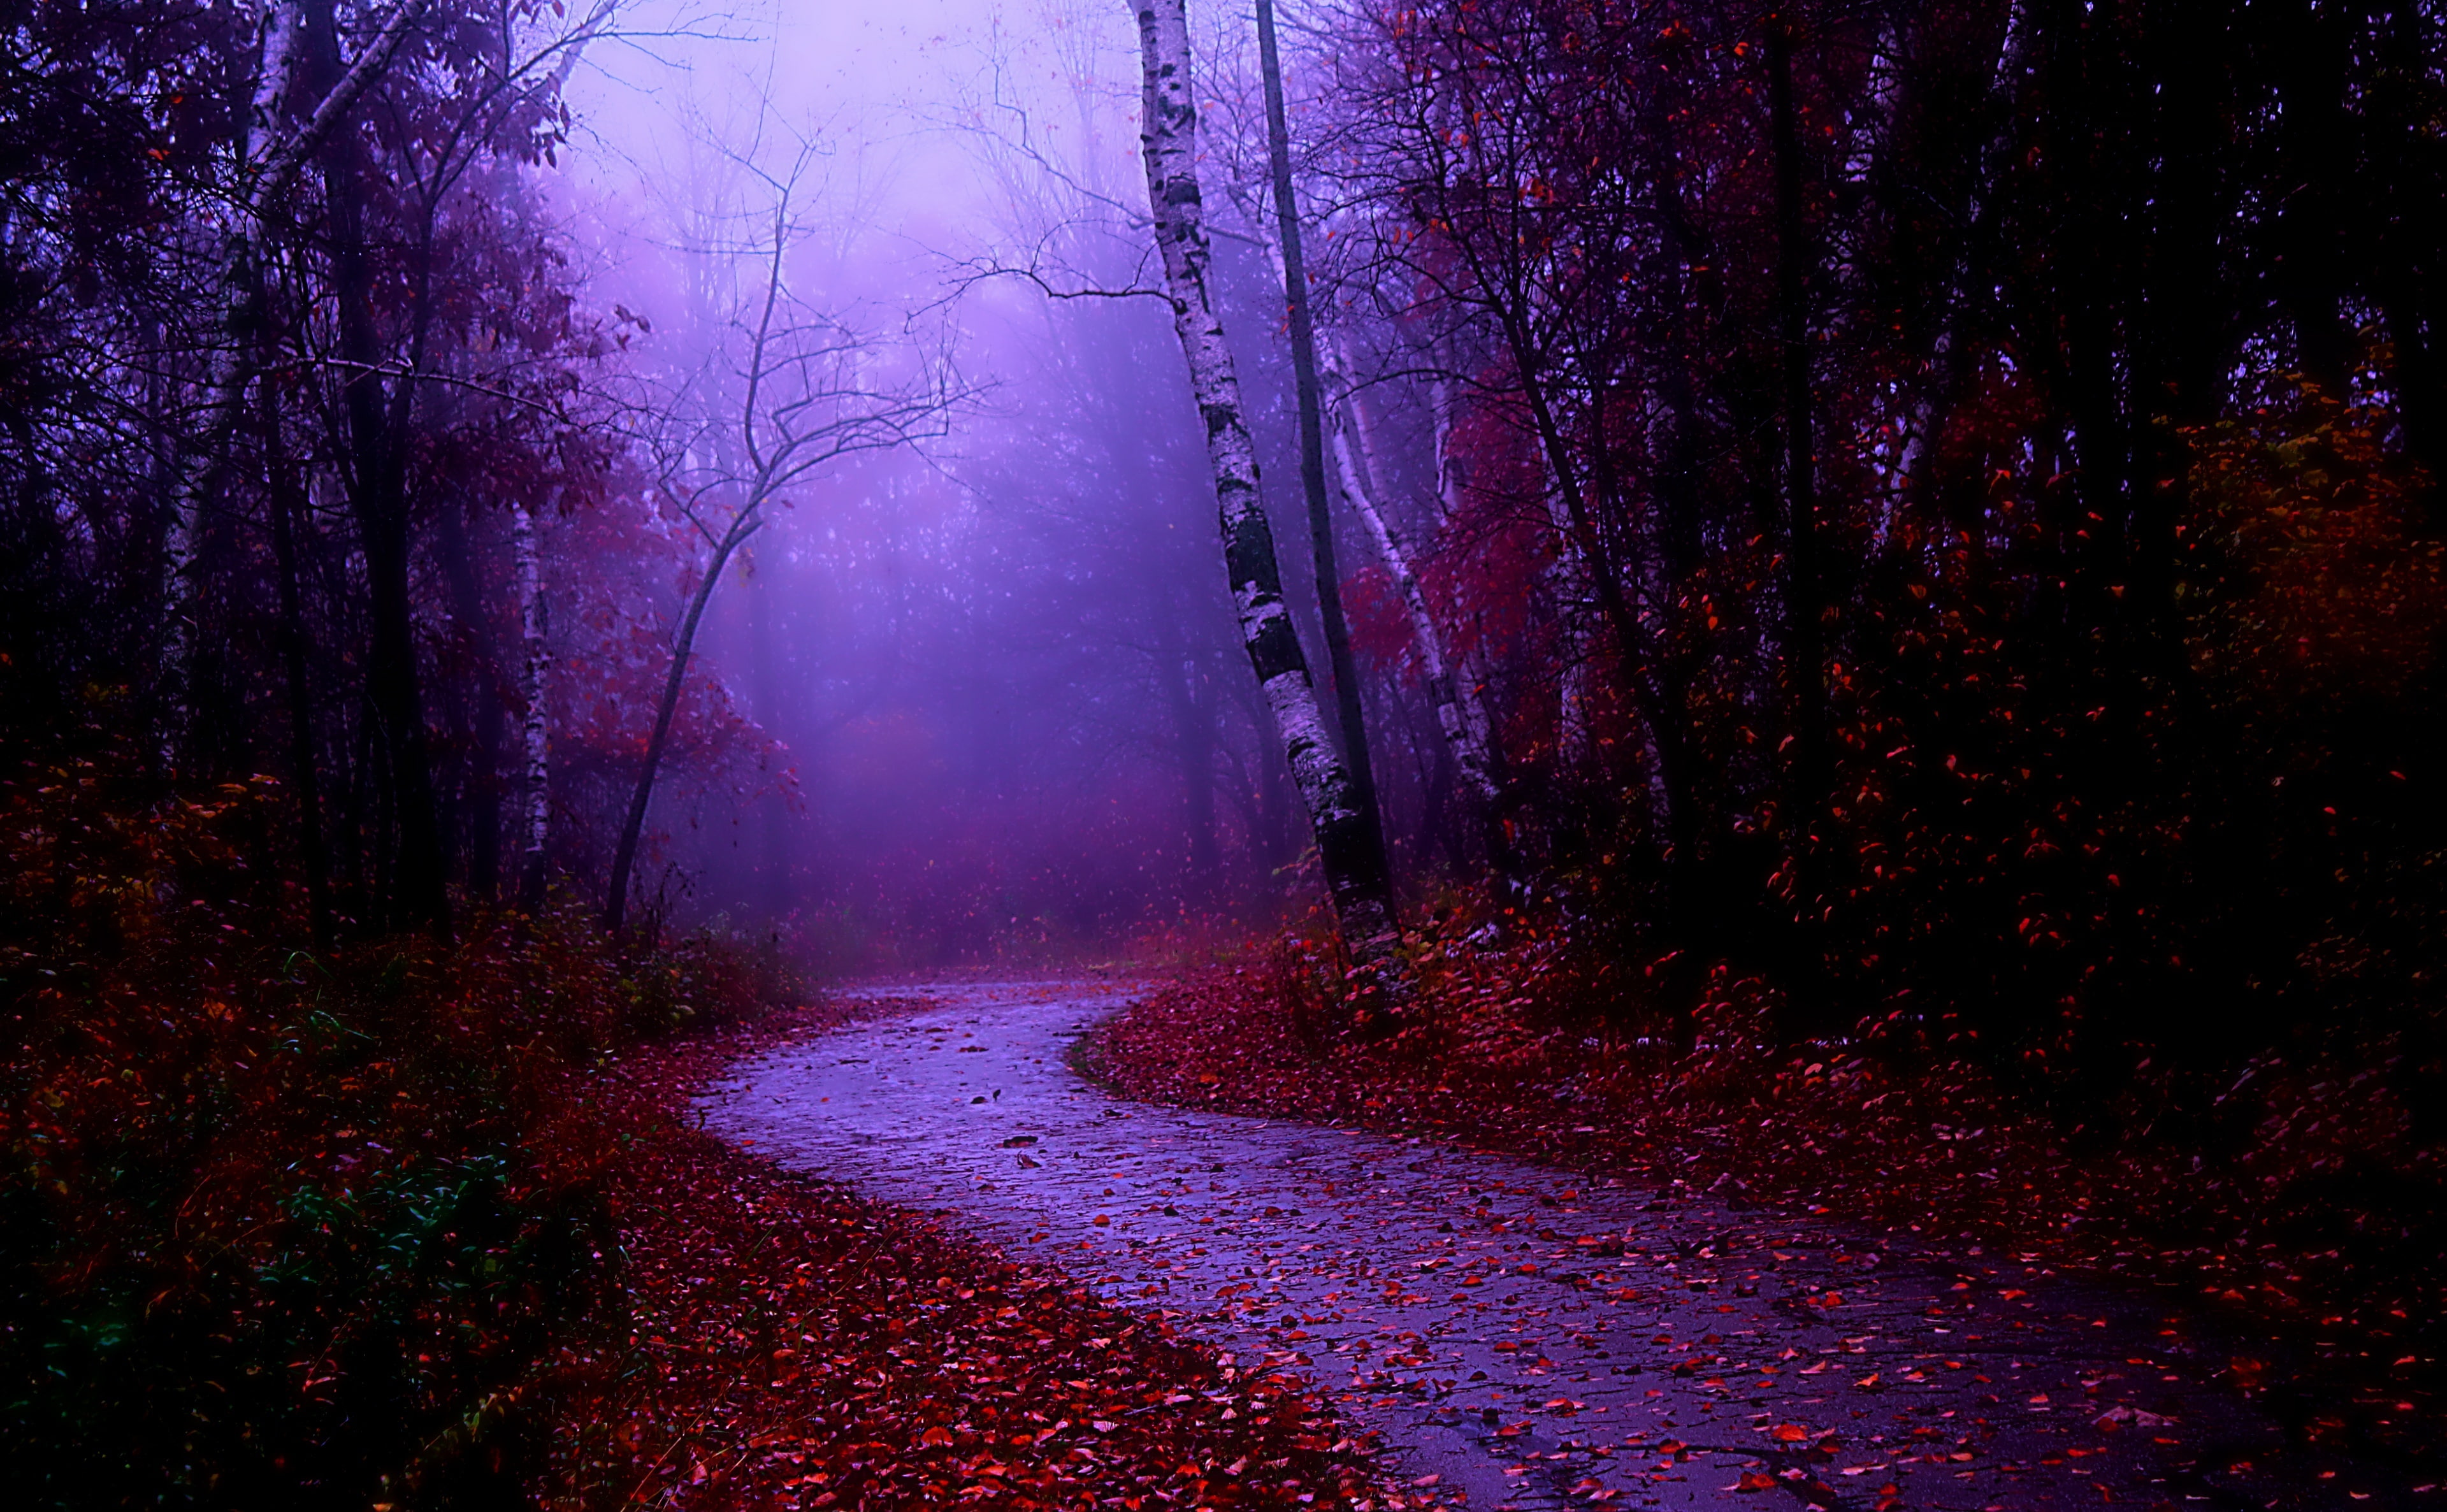 HD wallpaper: Misty Morning Walk, forest trail, Seasons